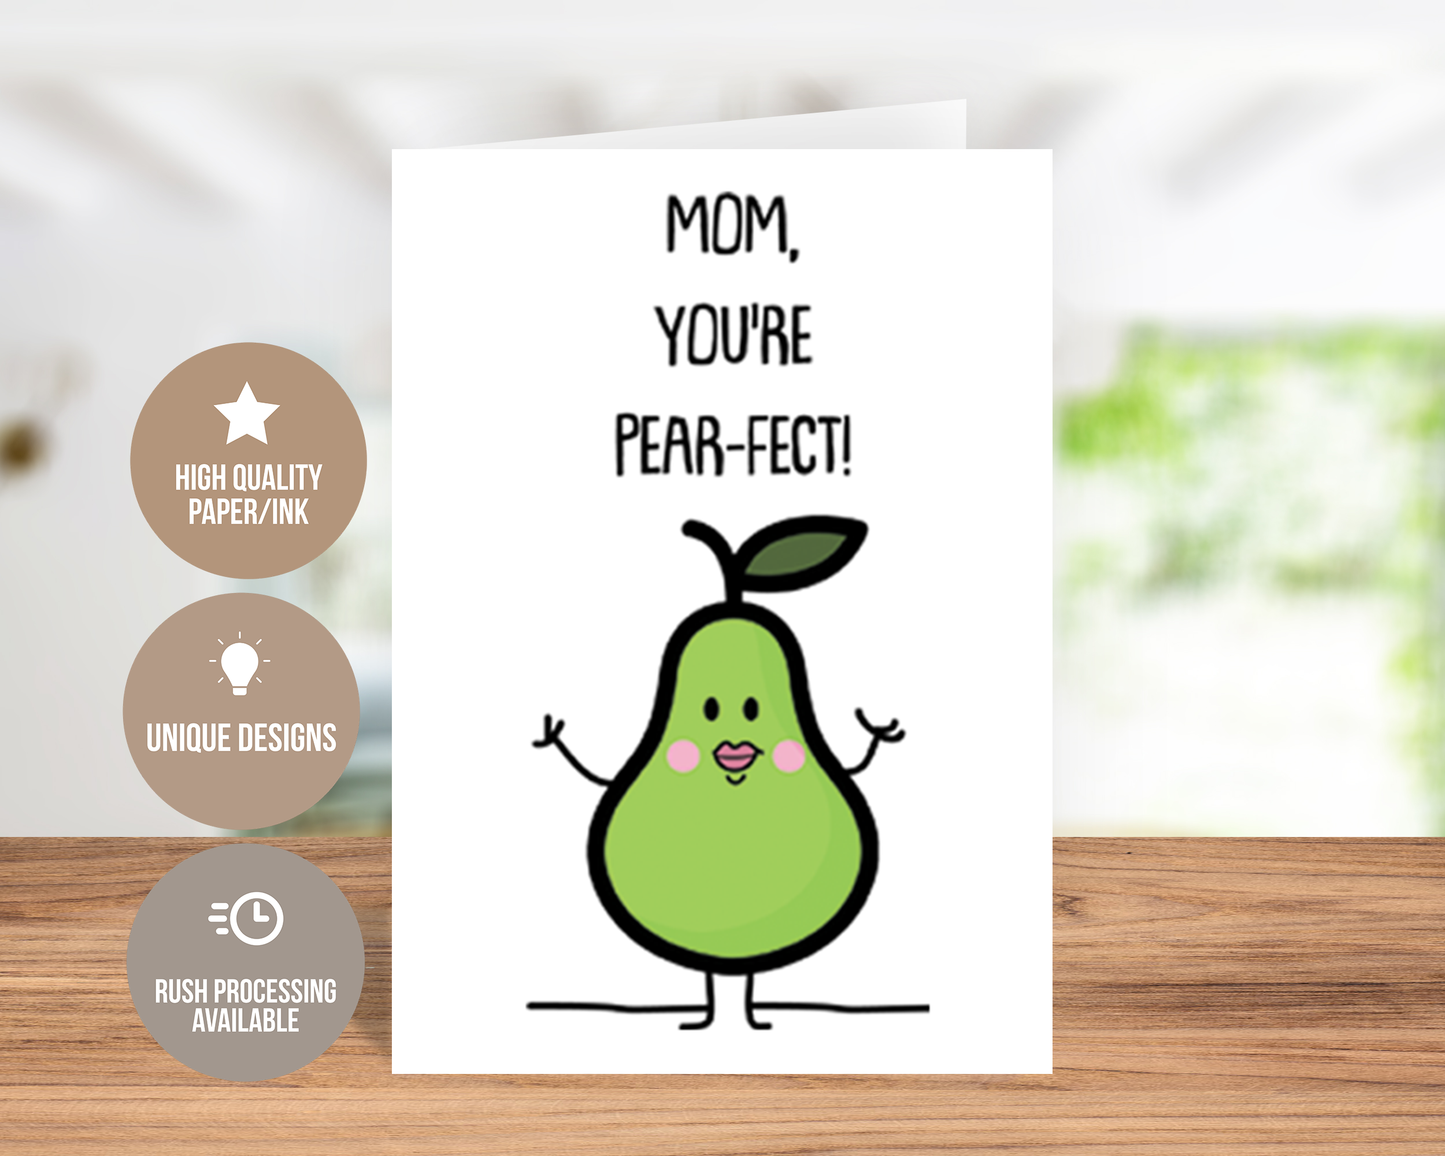 Mom, You're Pear-fect! - Cute Card